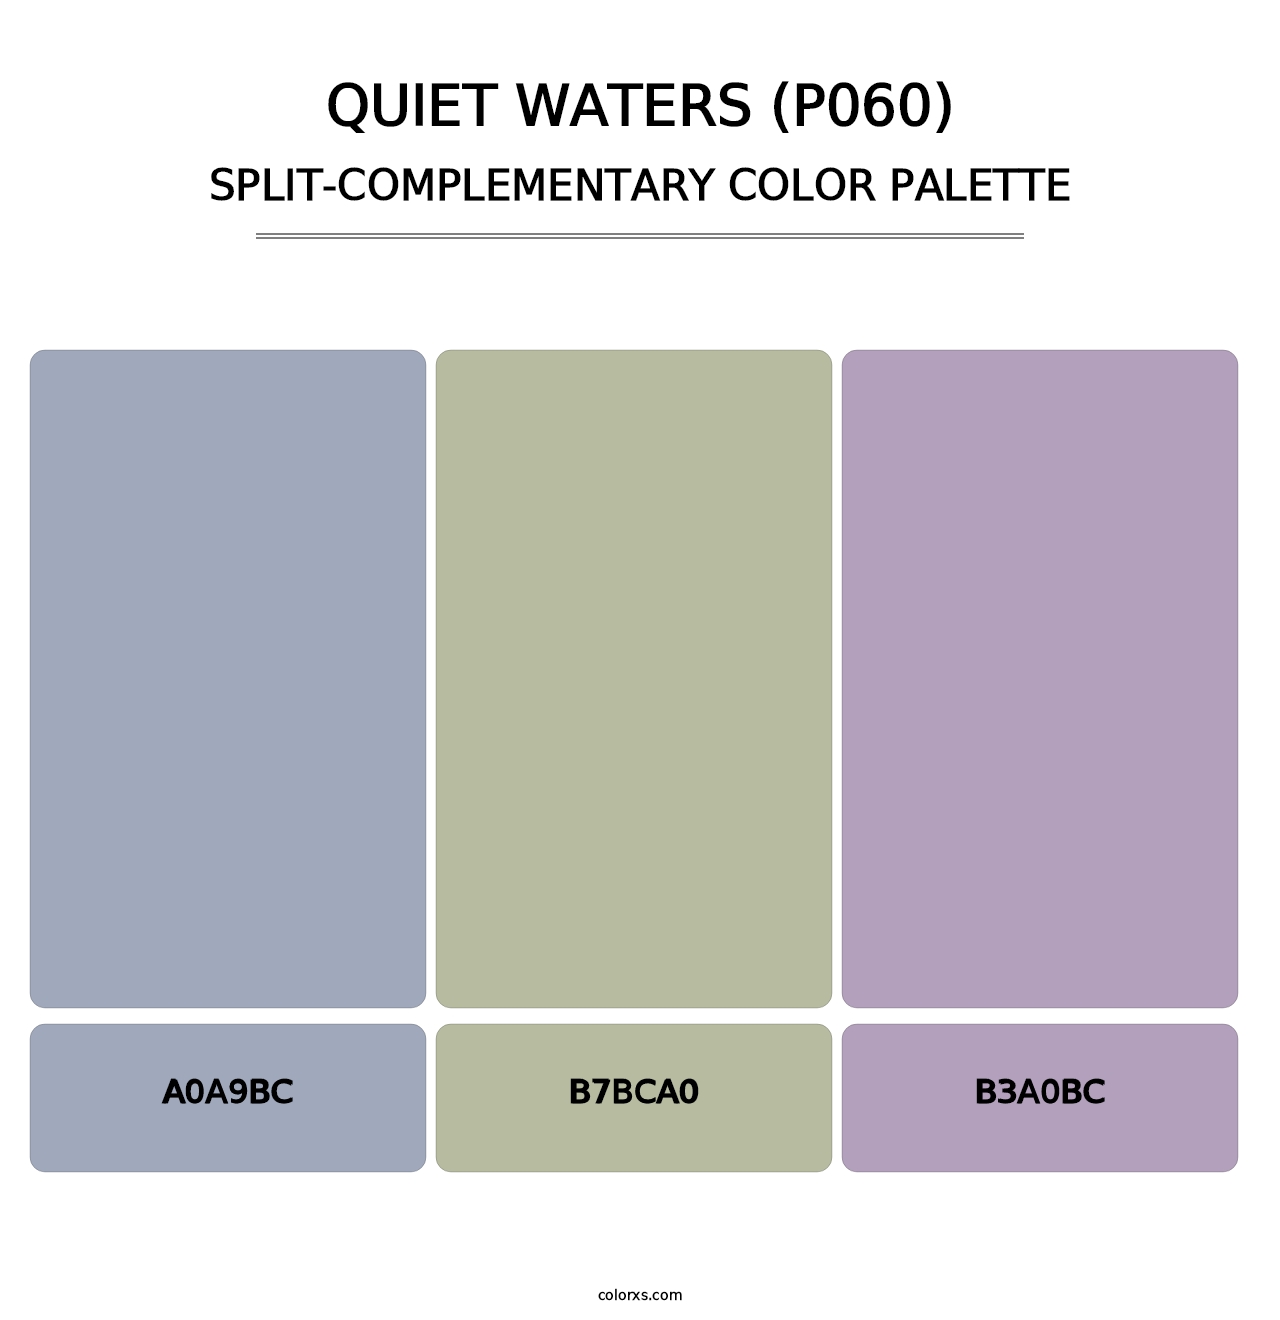 Quiet Waters (P060) - Split-Complementary Color Palette